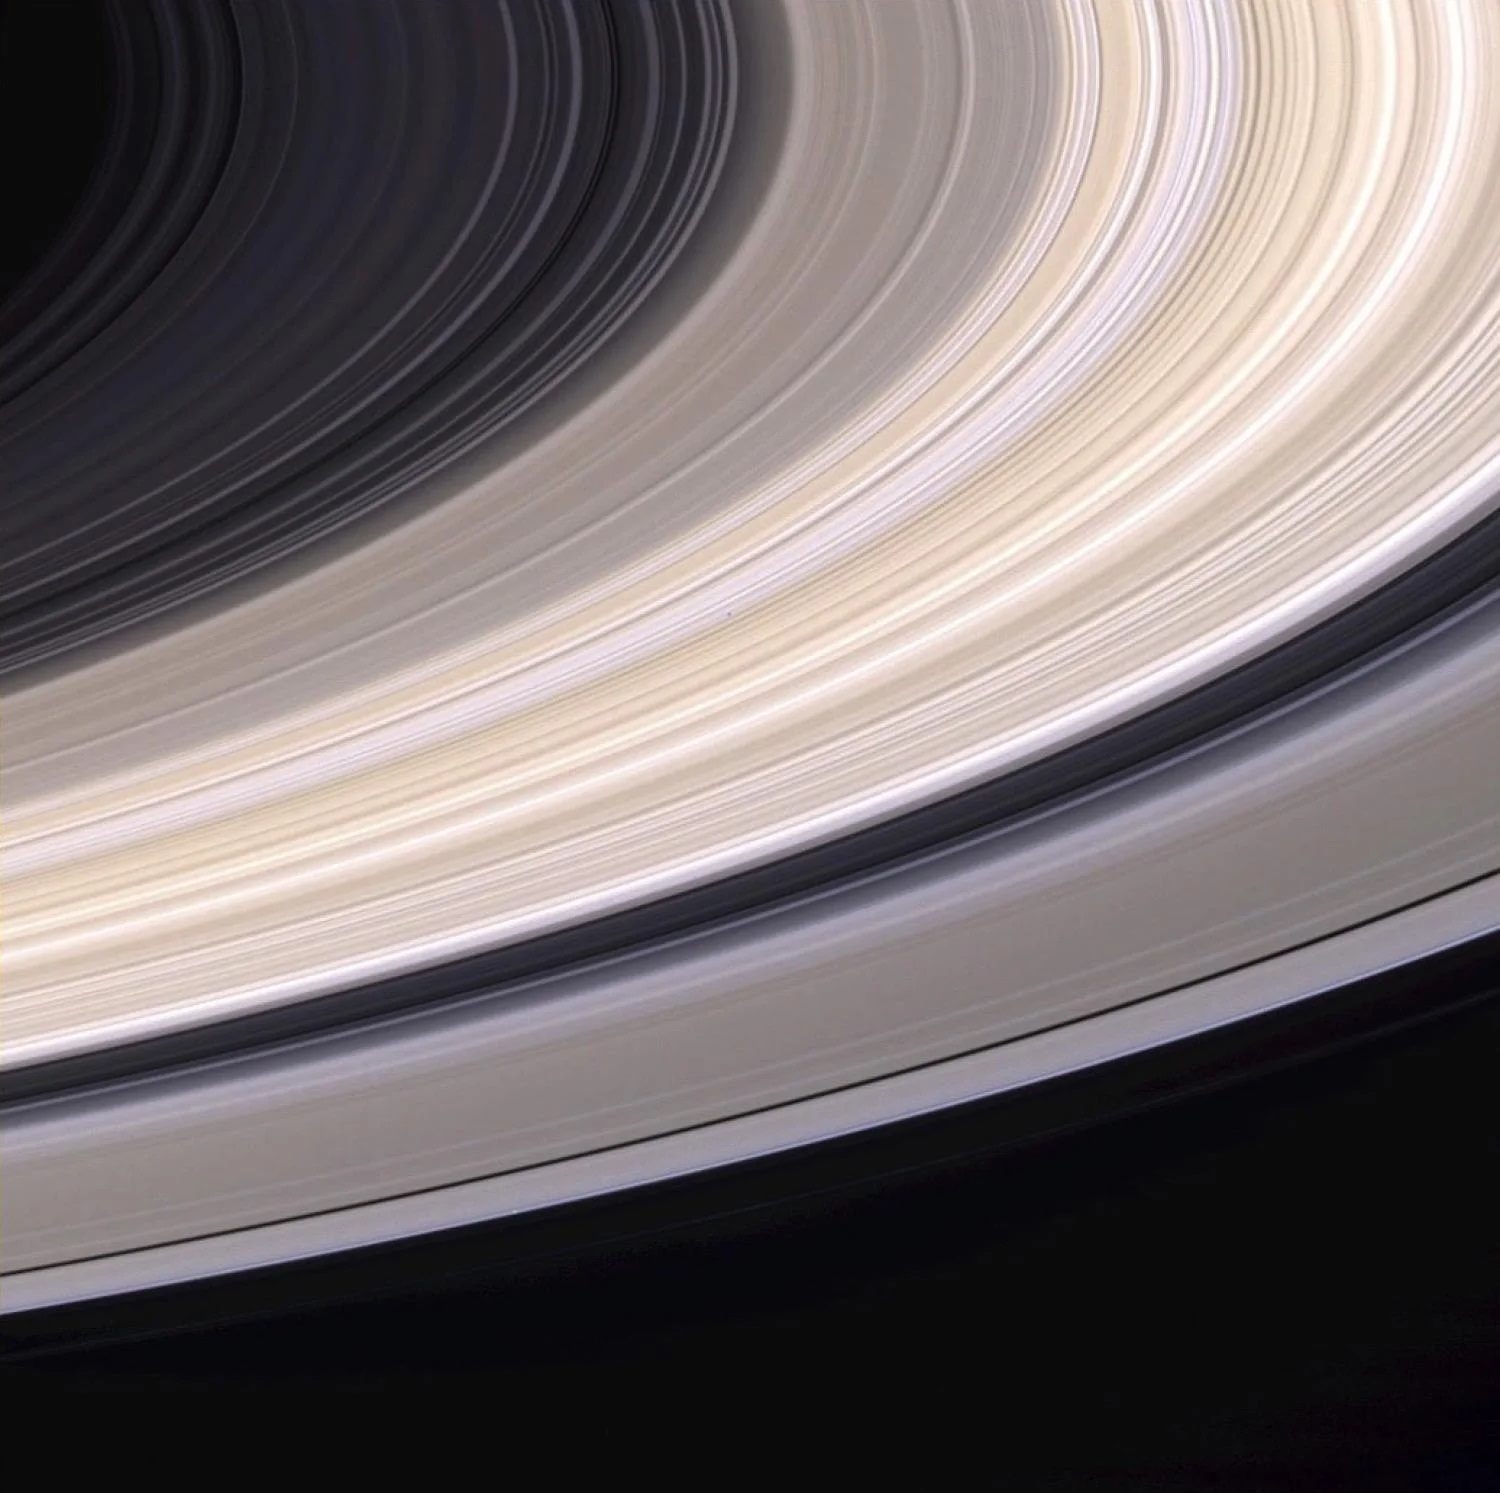 土星環的條紋顏色可能來自於被困在環冰中的少量雜質所造成。（Credit: NASA/JPL/Space Science Institute）